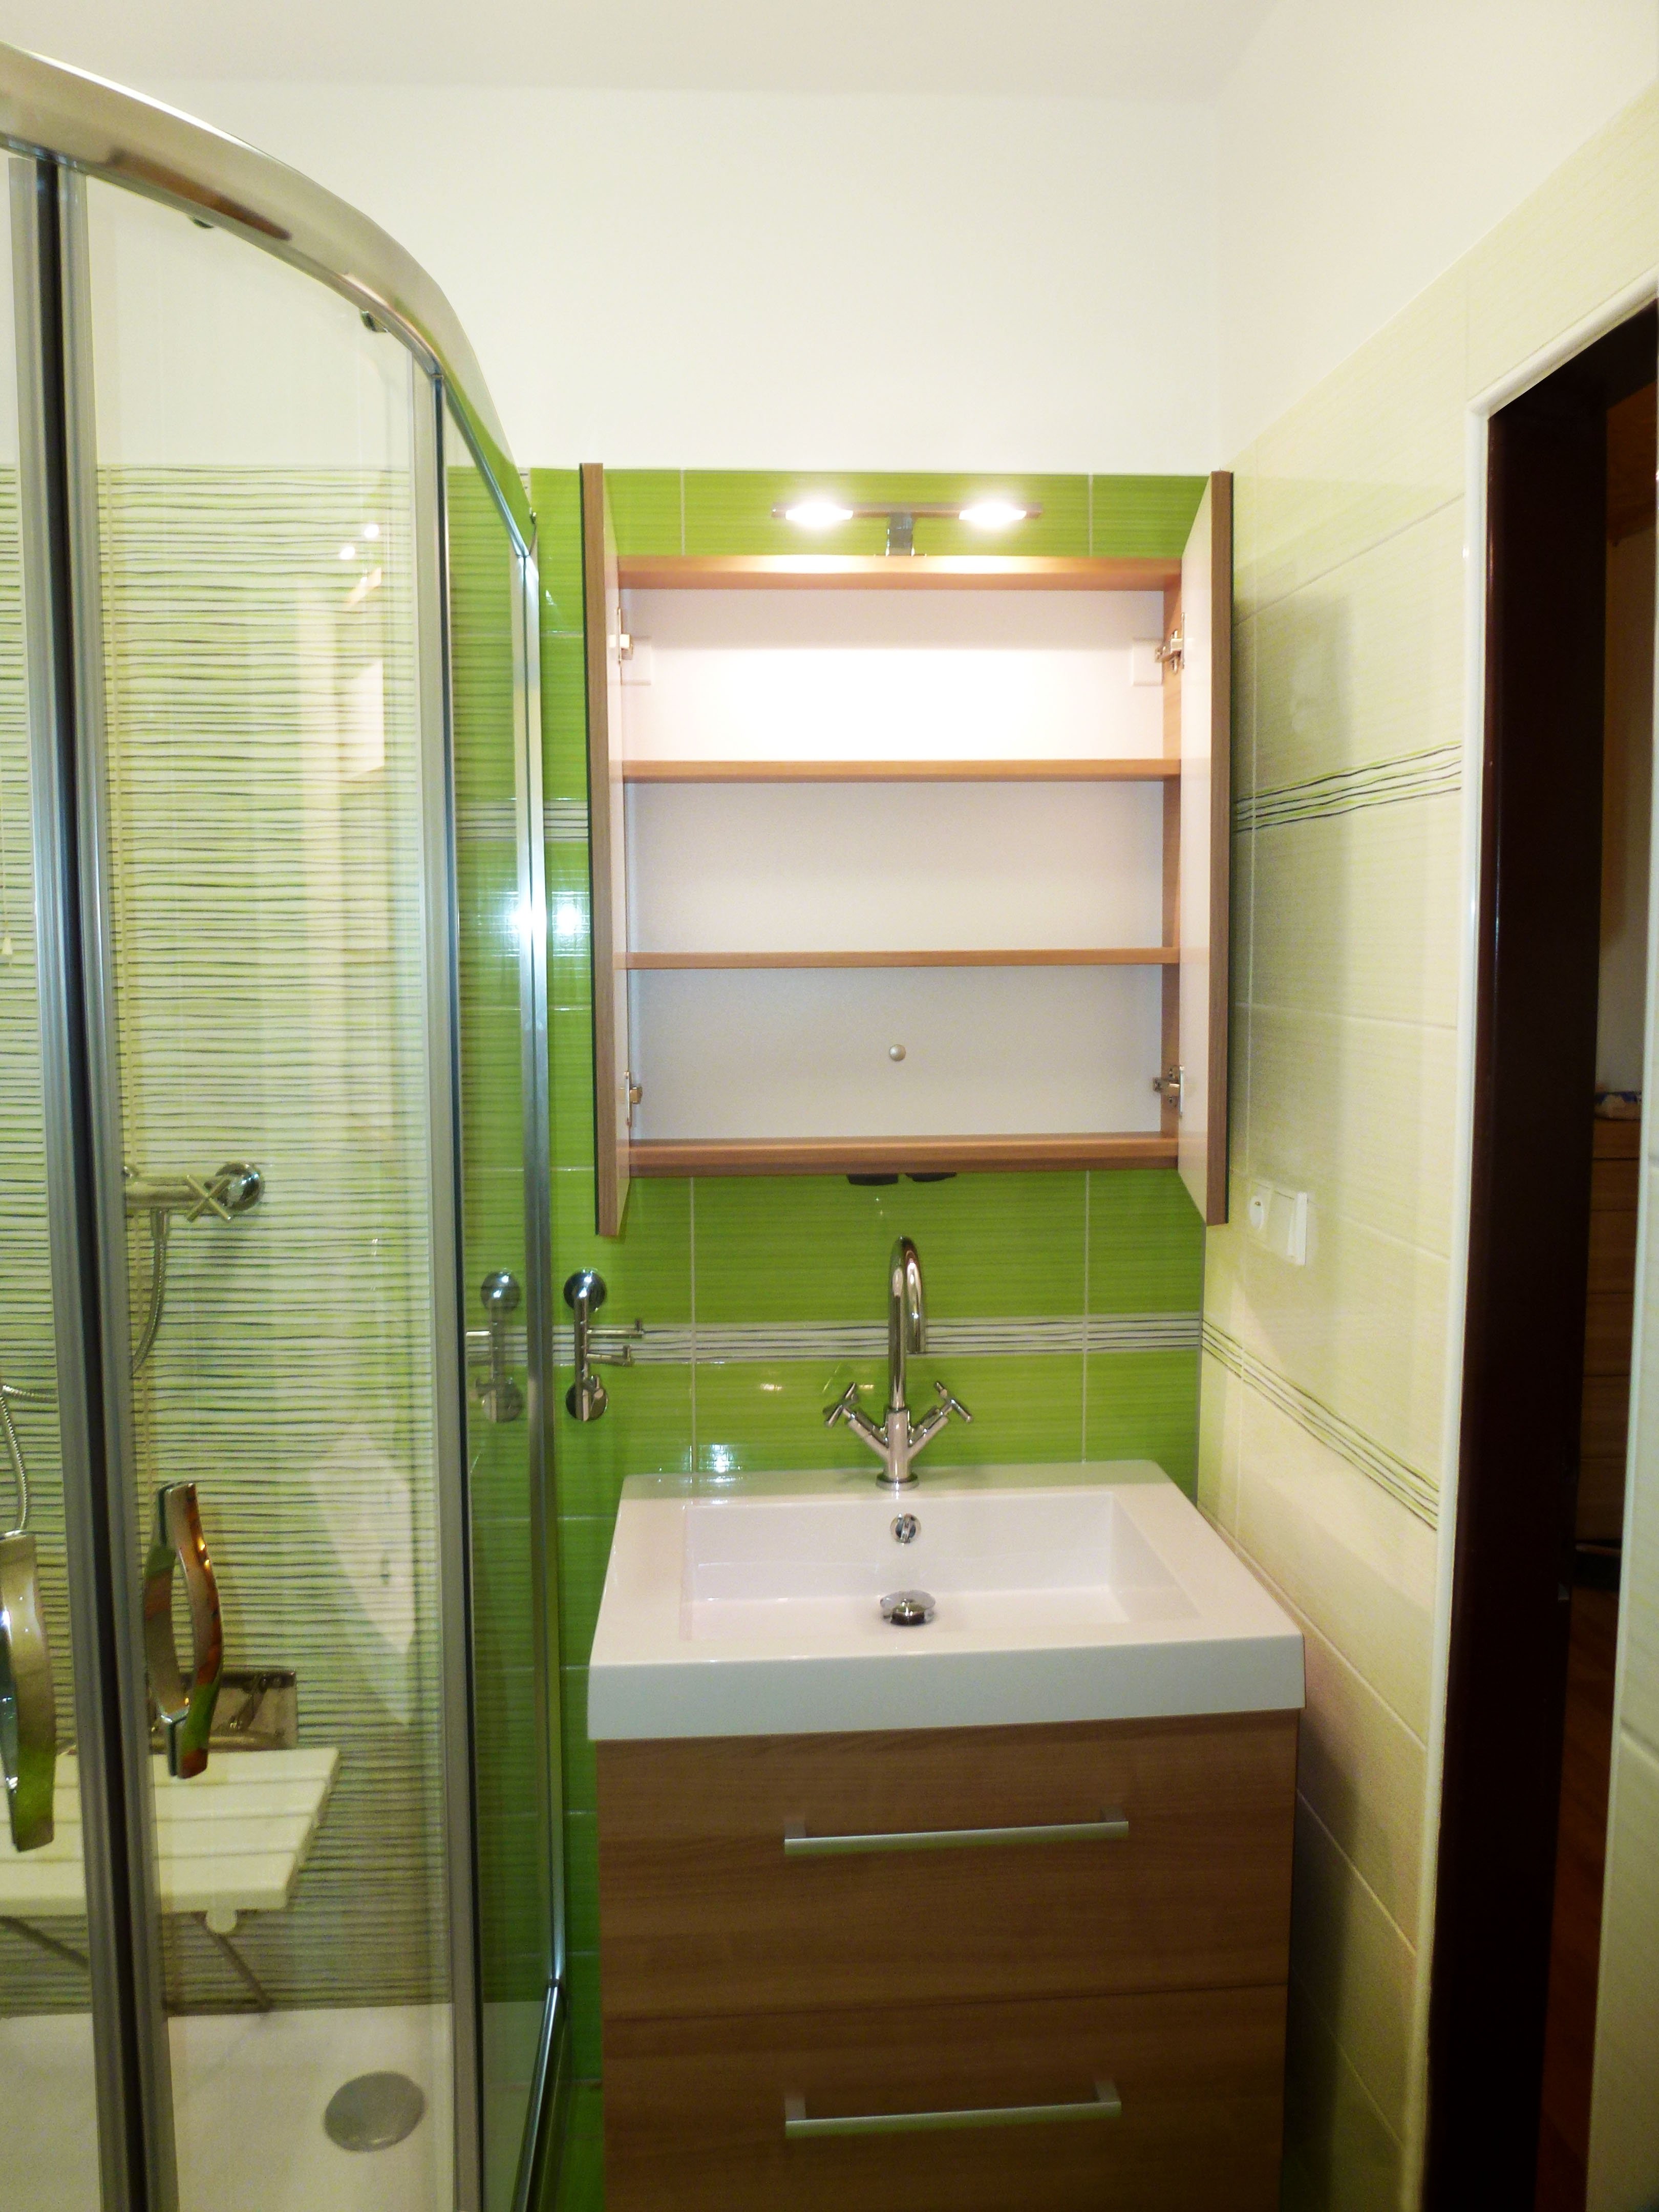 Zelená koupelna | Skříňka je vybavena zásuvkou a vypínačem Berker s krytím IP 44 | Koupelny-svitavy.cz